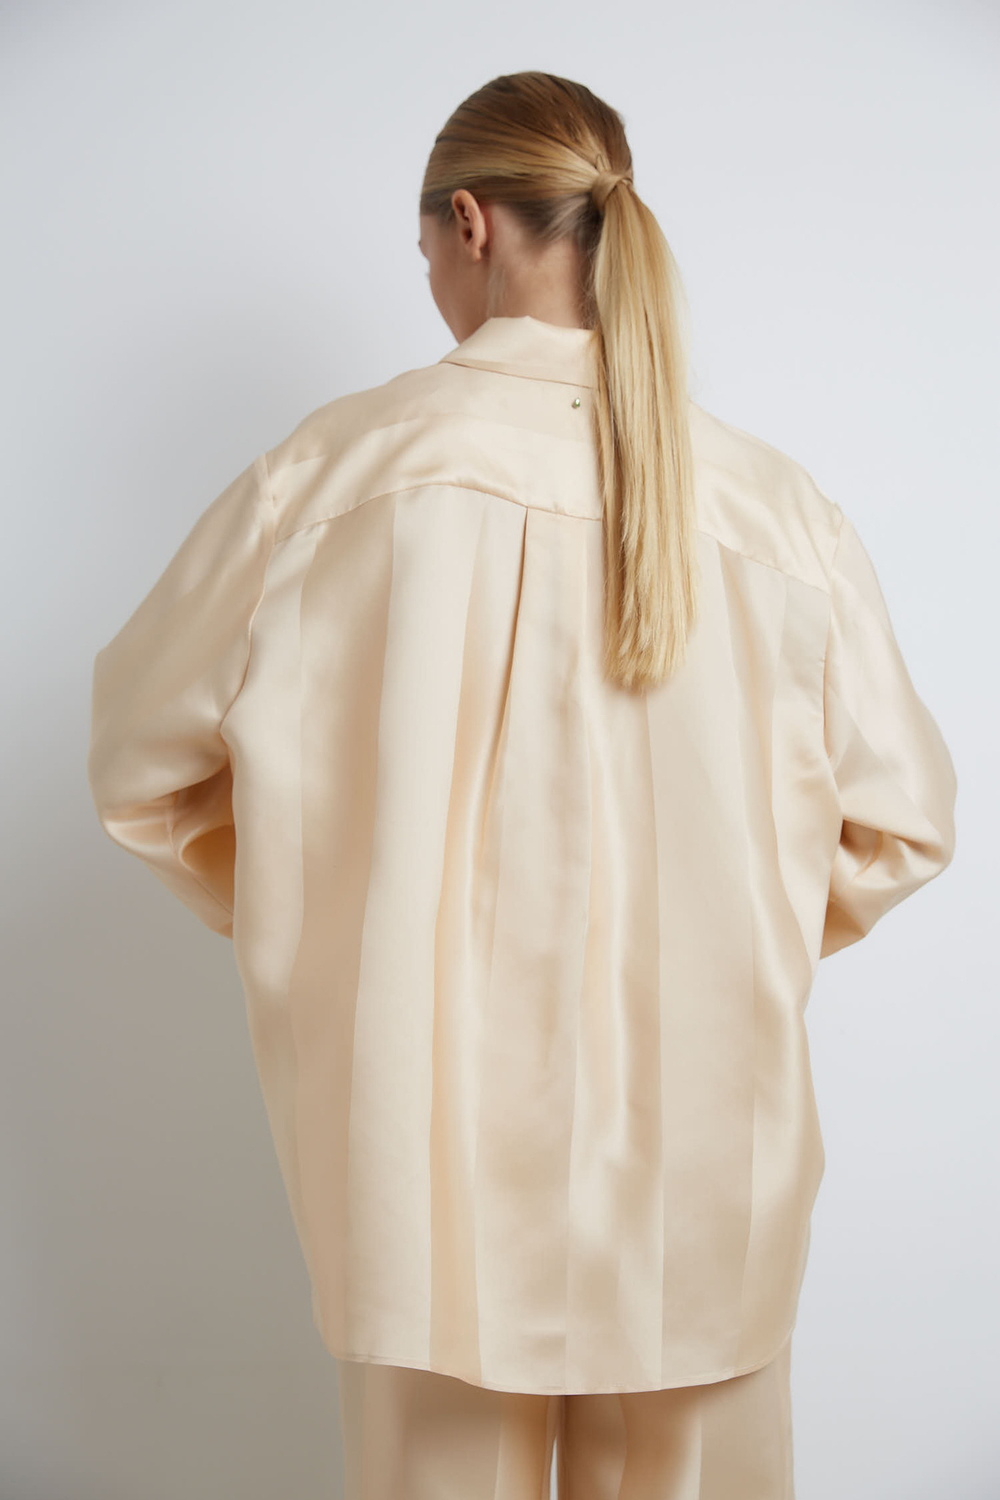 Рубашка из шелка Анн Демельмейстер в полоску персиковый